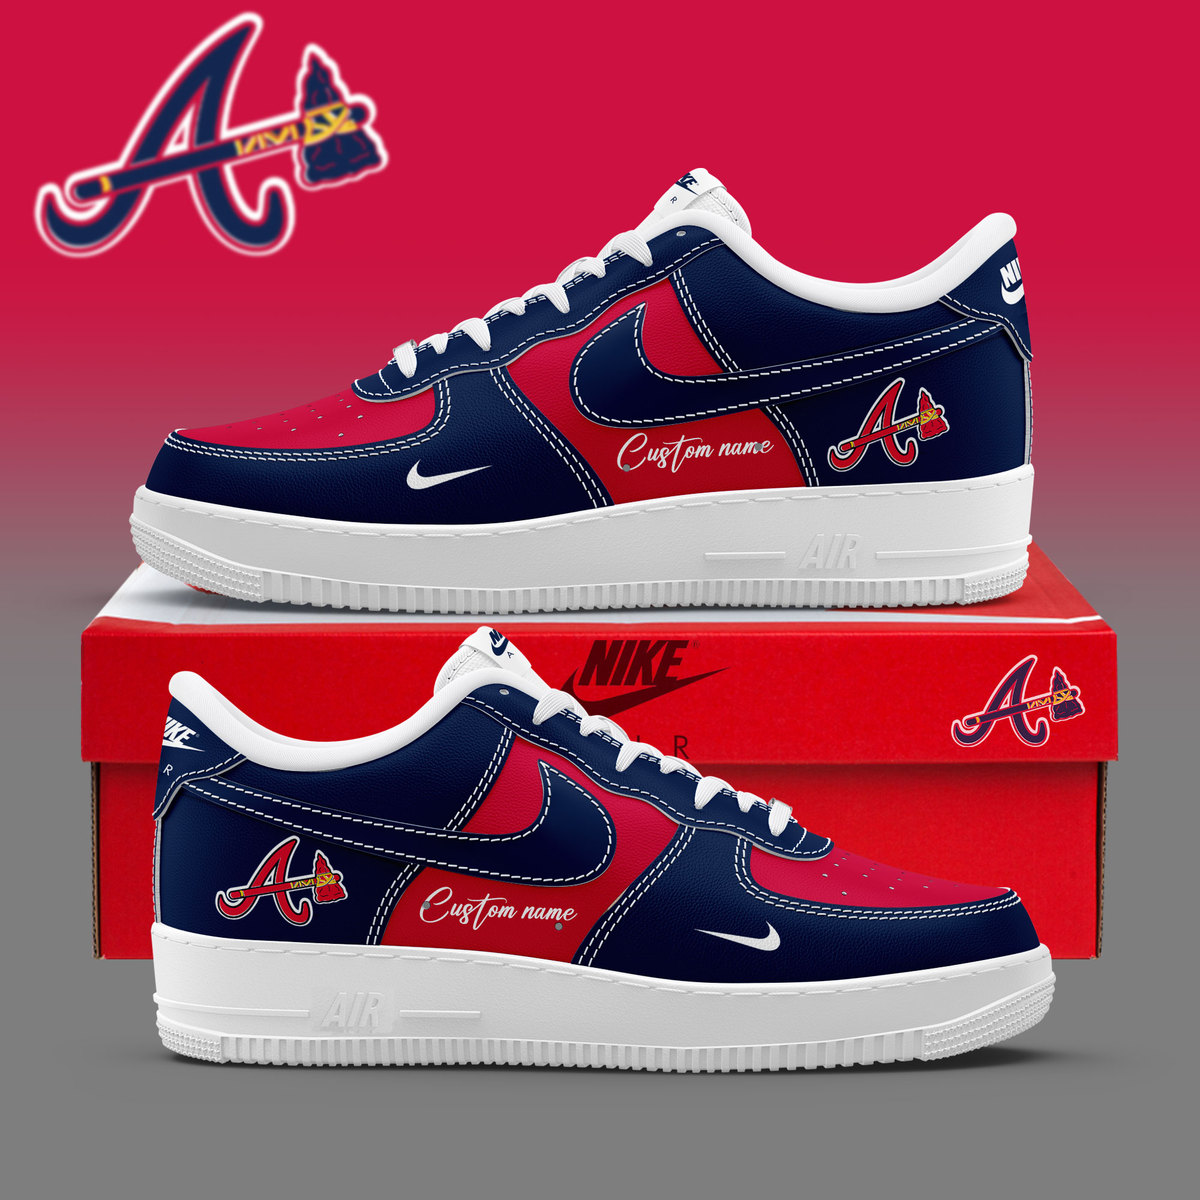 Atlanta Braves Custom Name Air Force 1 Sneaker